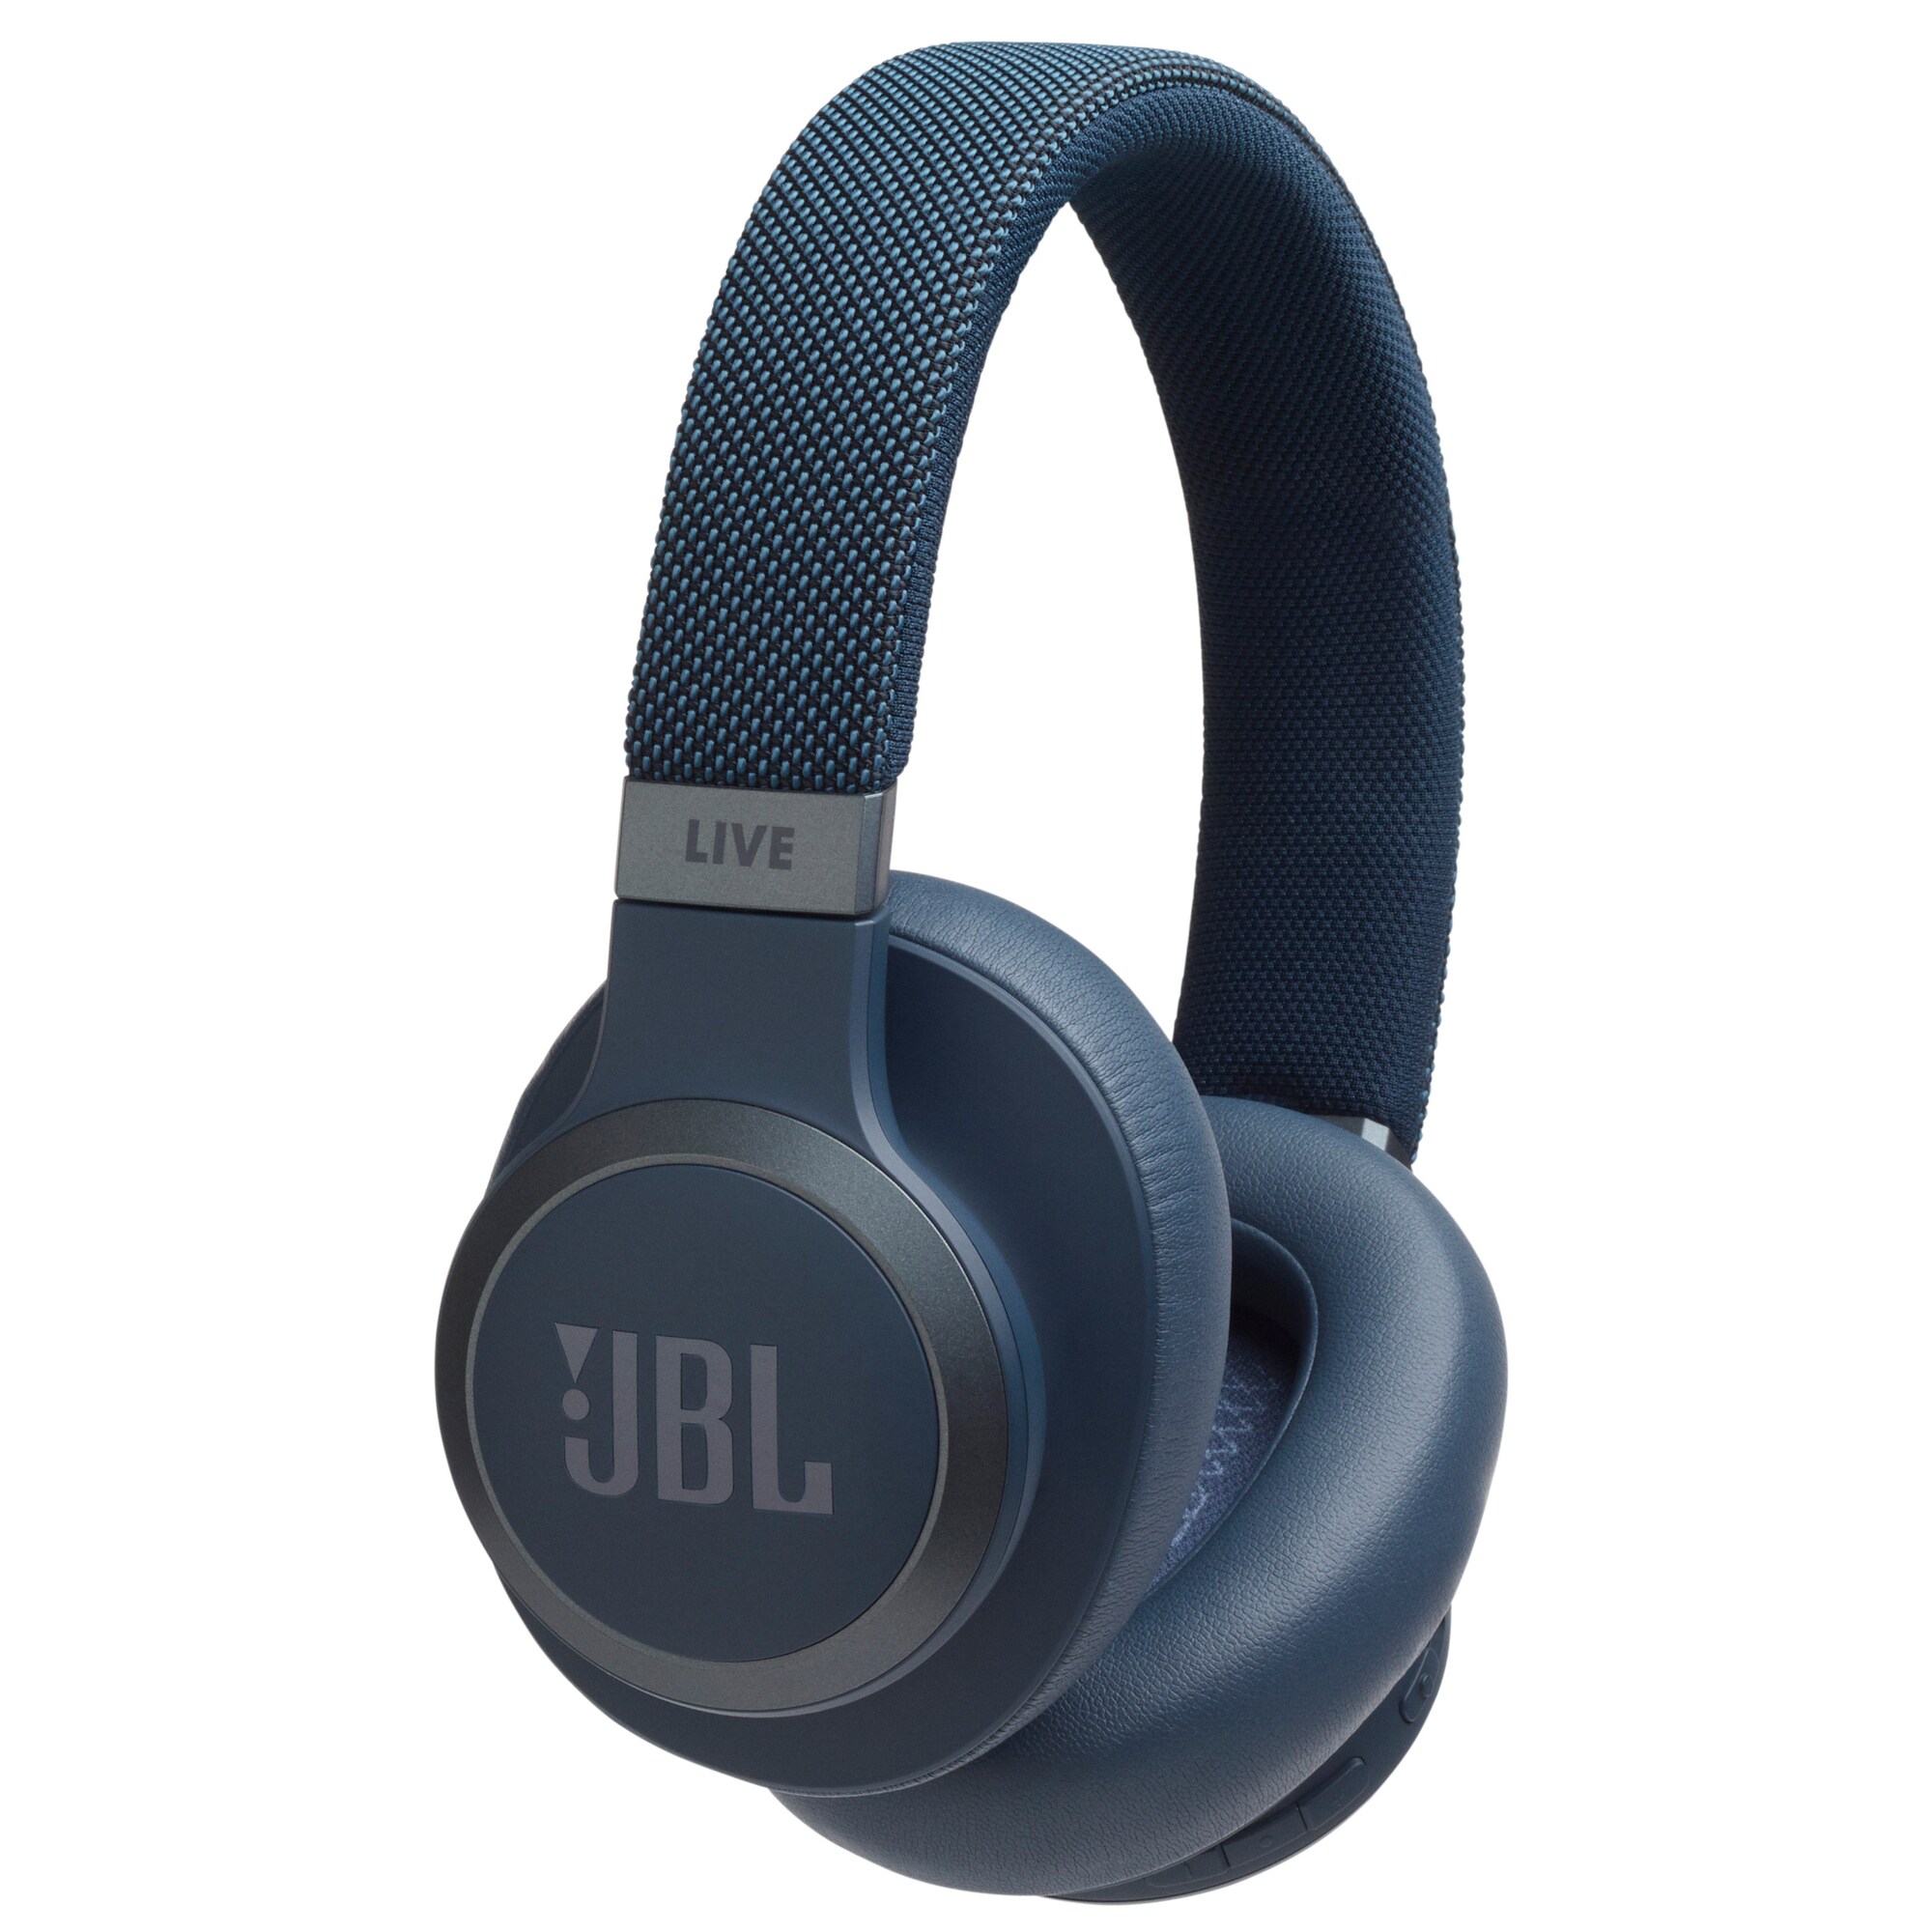 JBL LIVE 650BT trådlösa around-ear hörlurar (blå) - Hörlurar - Elgiganten